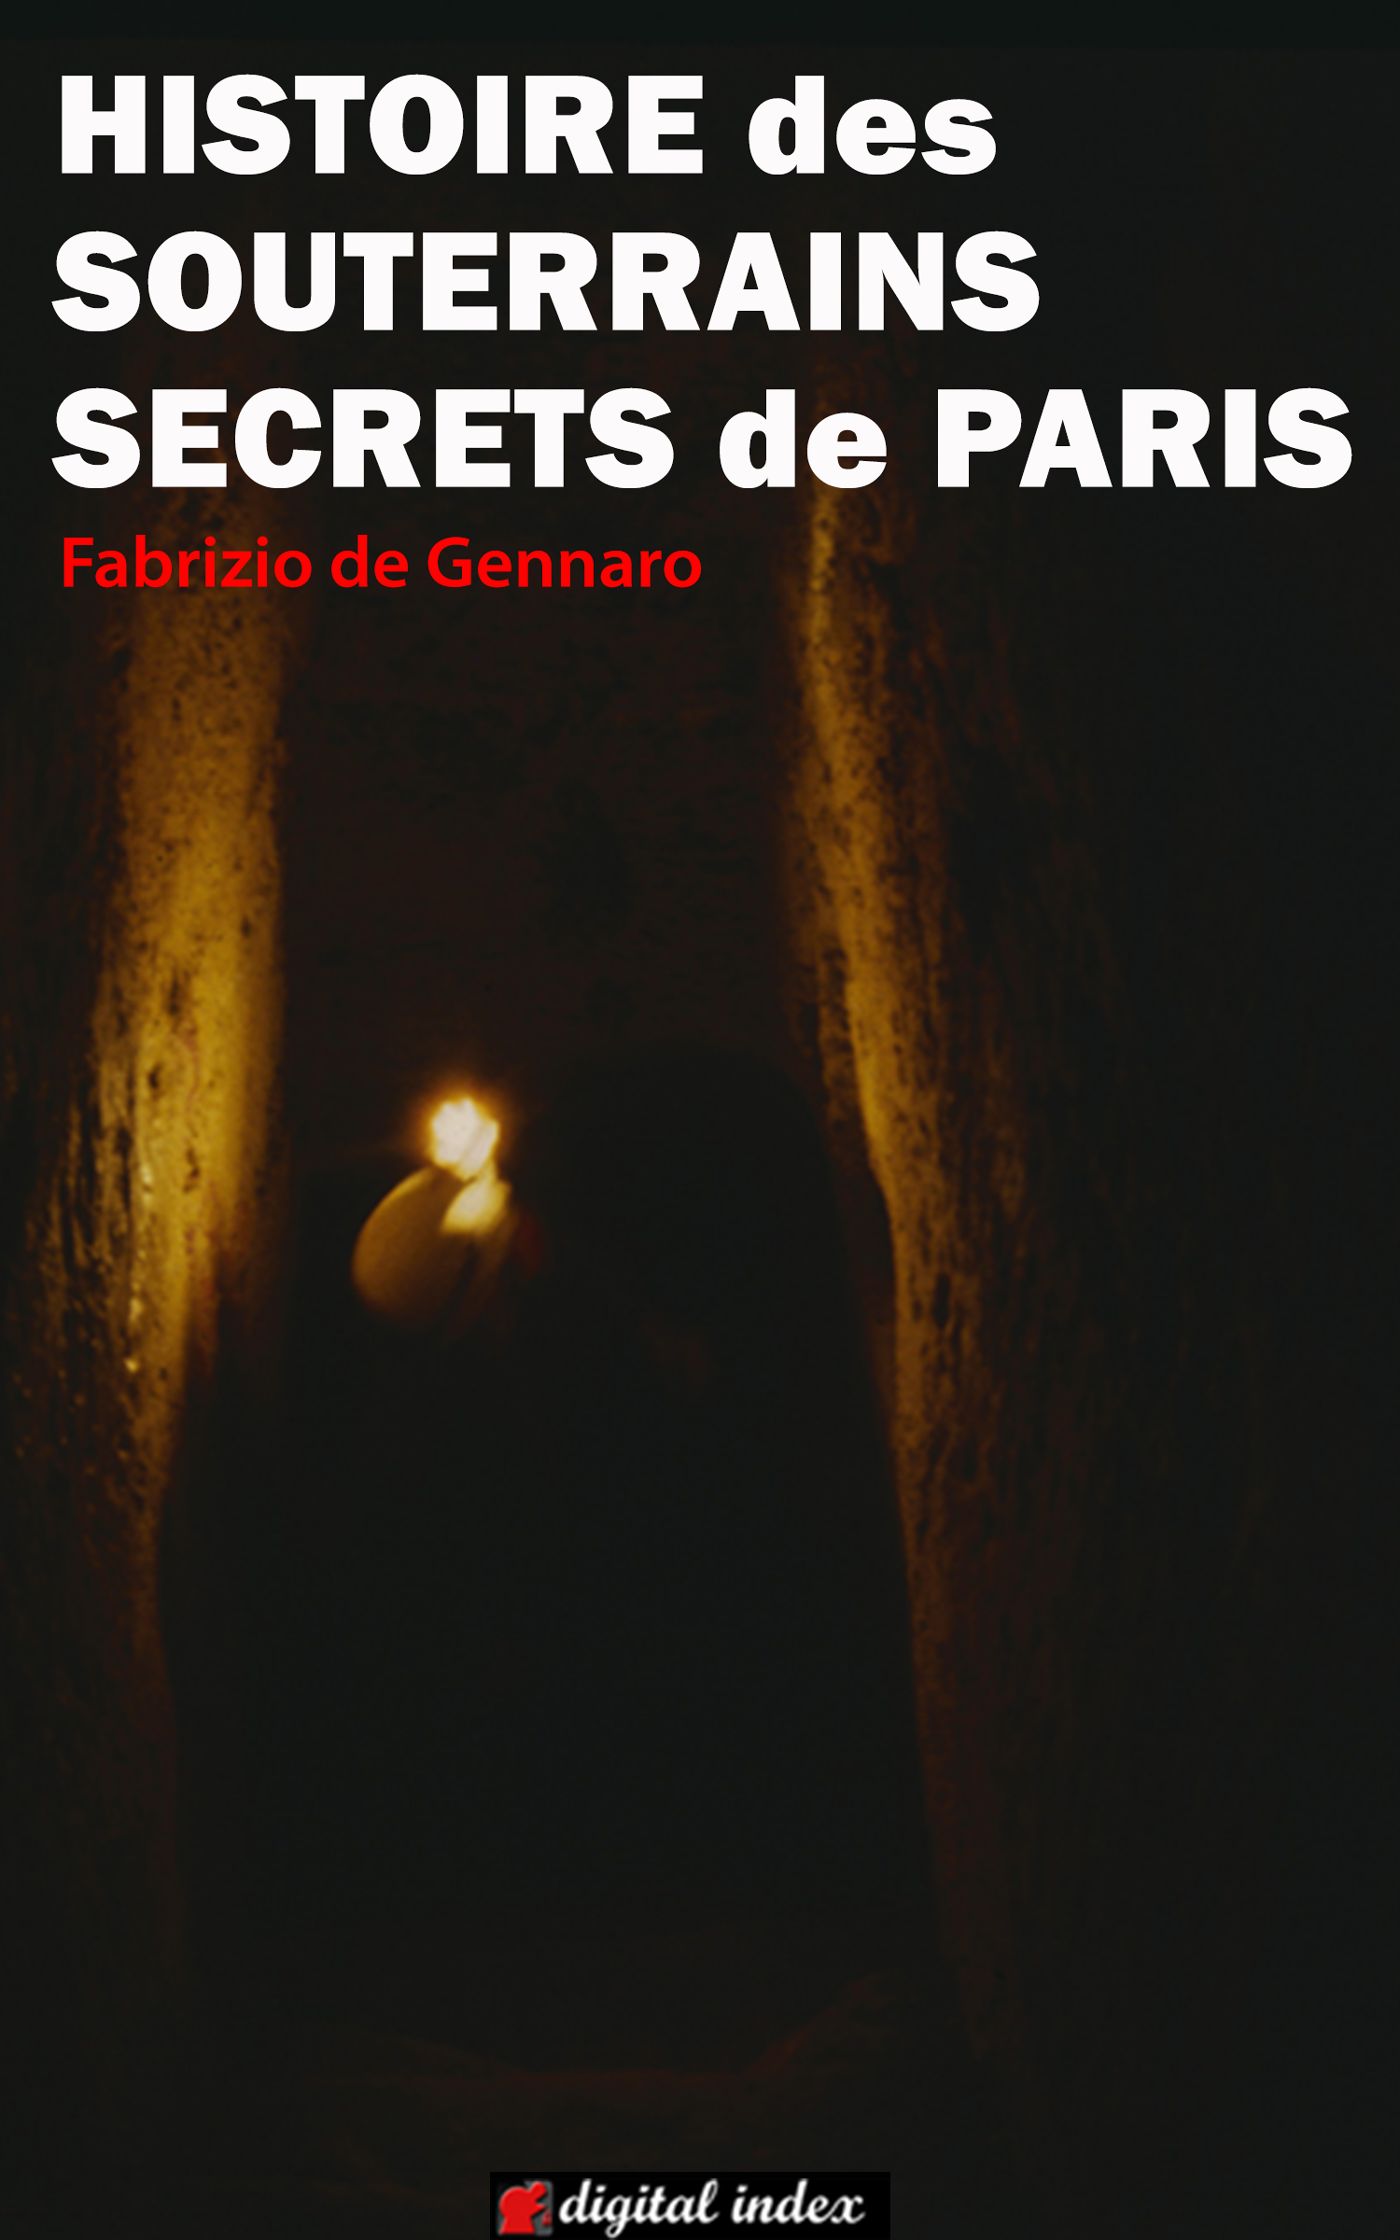 cover-histoire-paris-souterrain